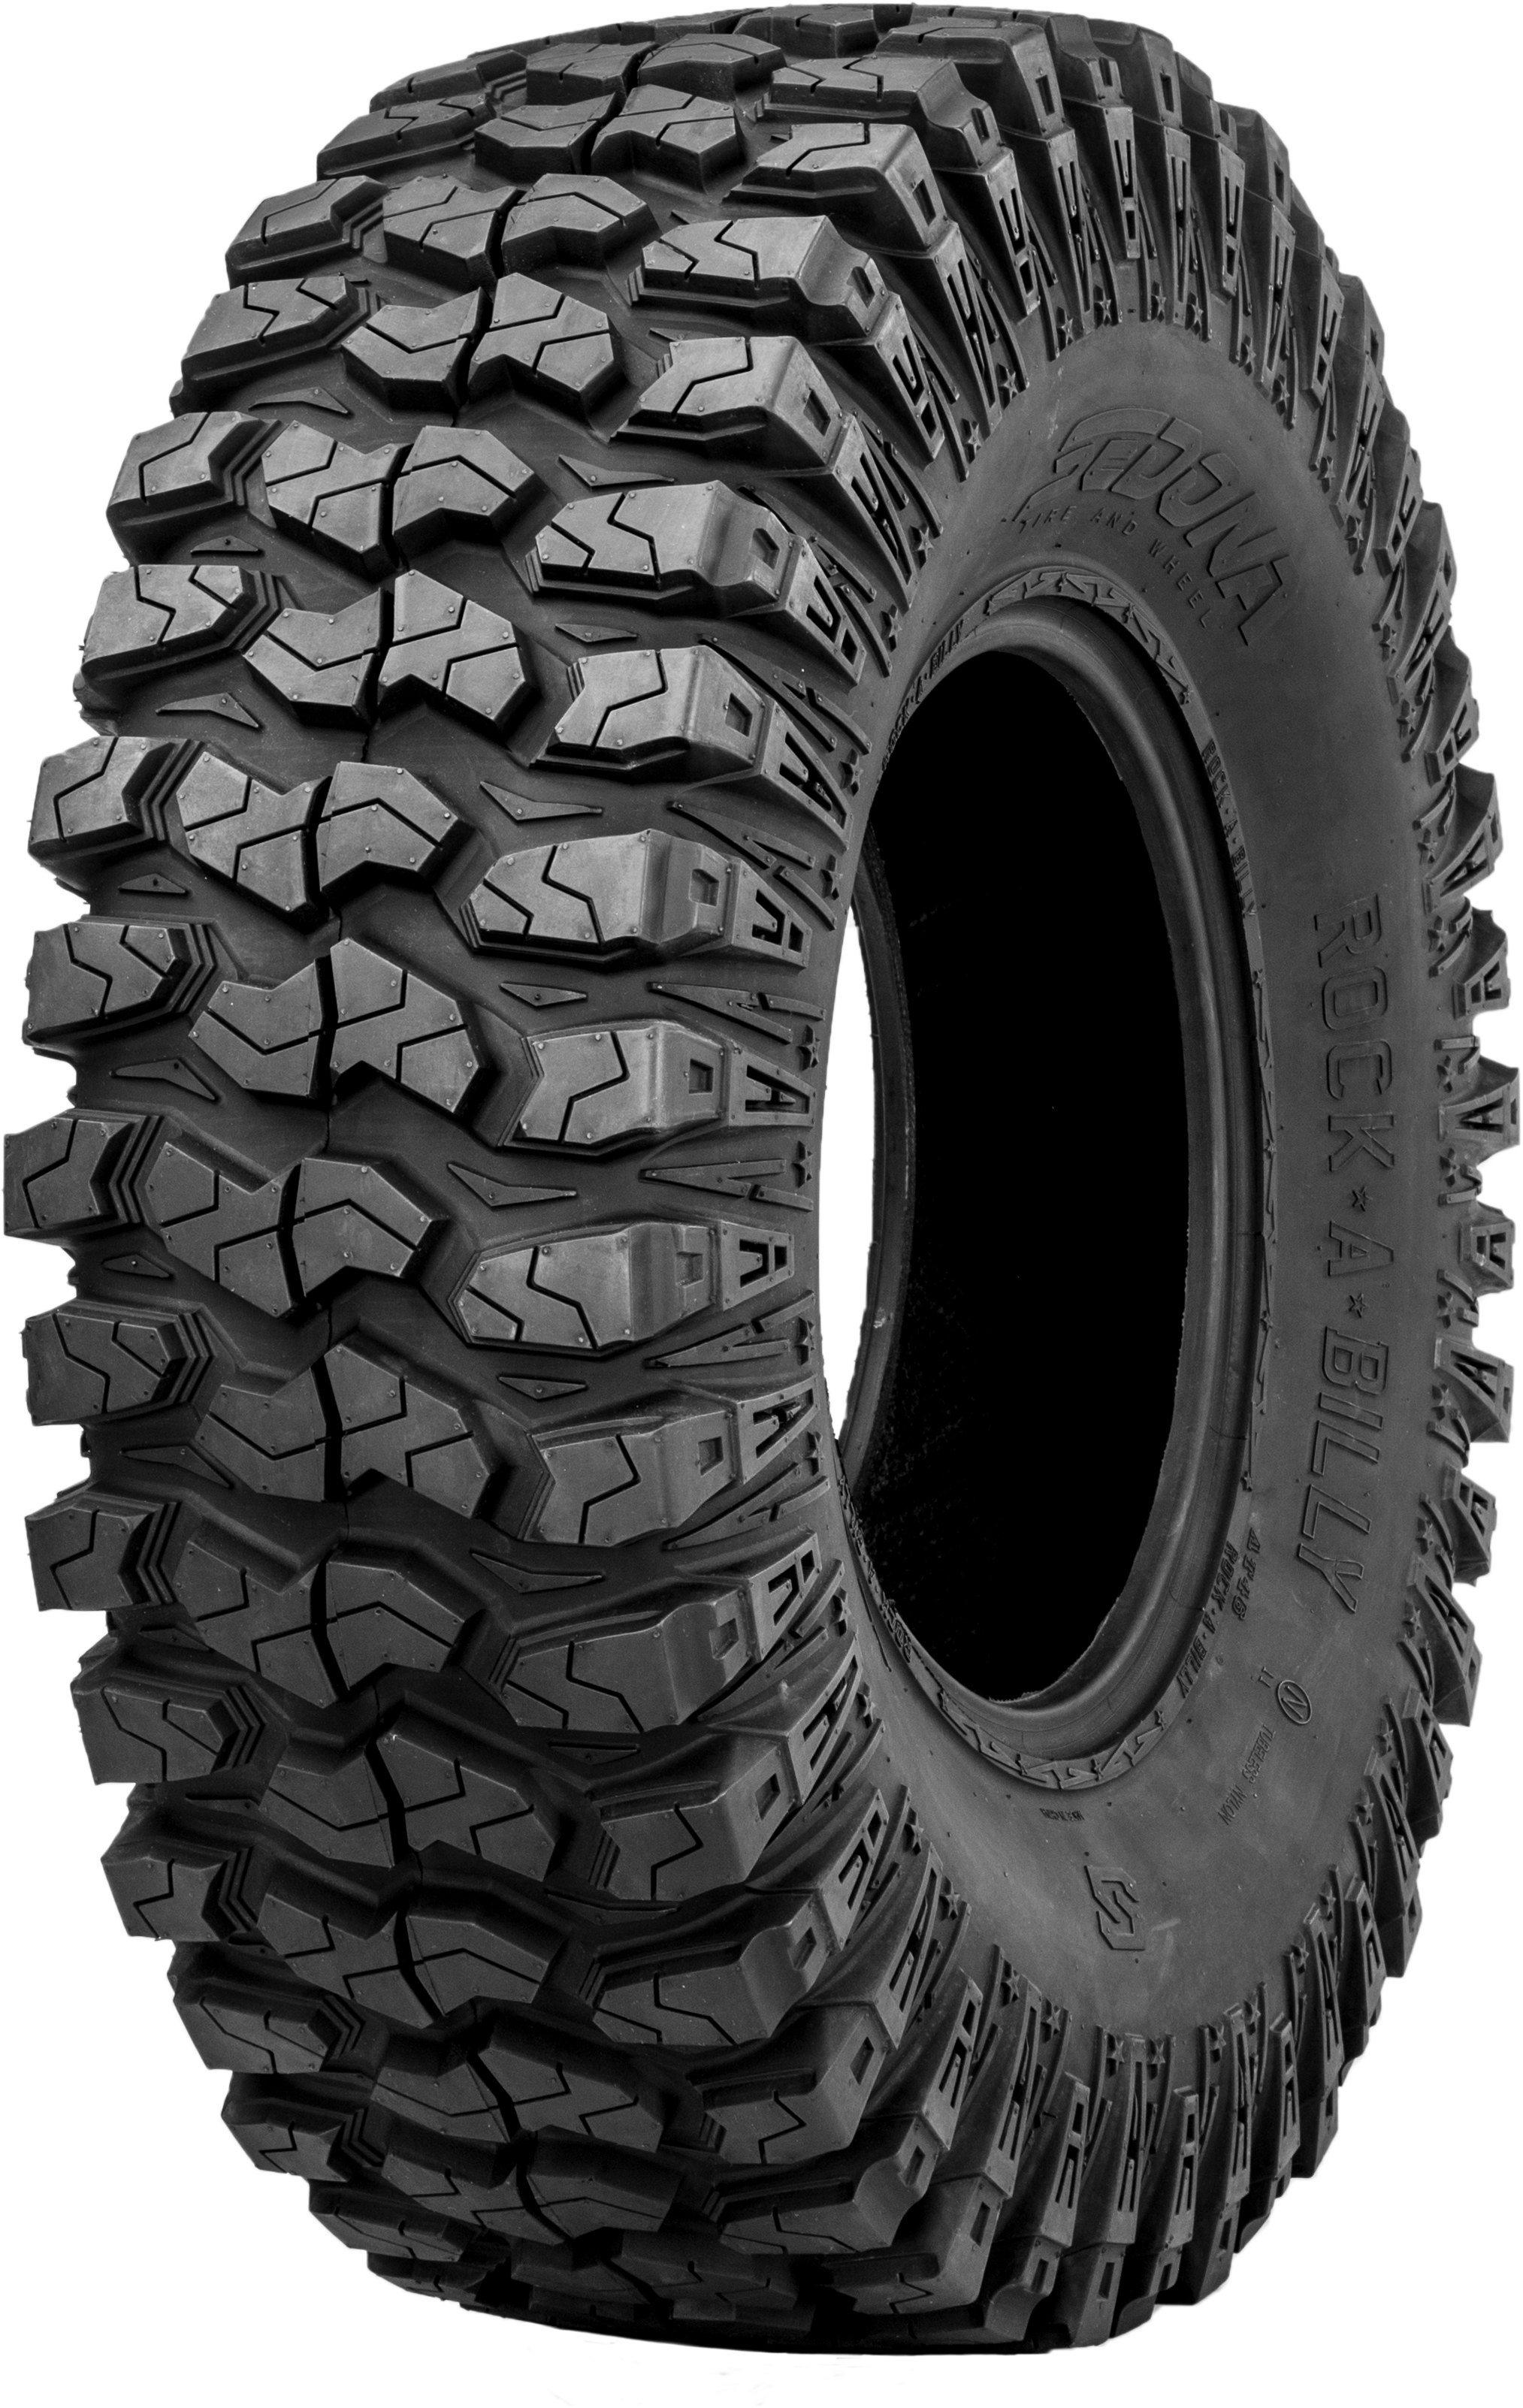 Sedona - Tire Rock-a-billy 32x10r14 Radial 8pr Lr-785lbs - RAB3210R14